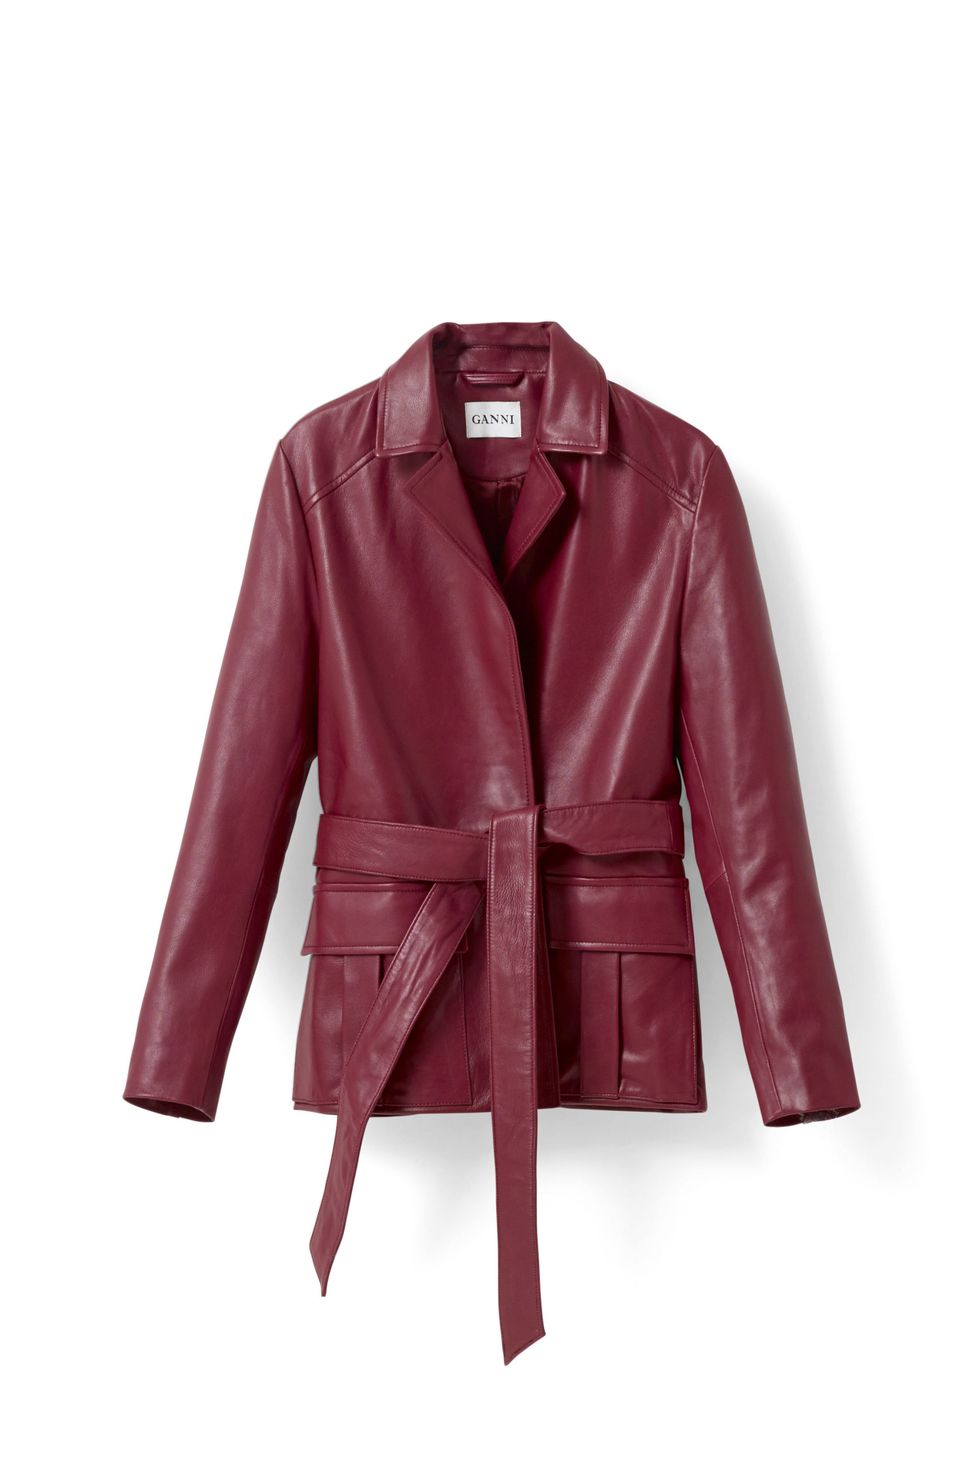 Clothing, Outerwear, Leather, Jacket, Leather jacket, Sleeve, Coat, Collar, Textile, Blazer, 